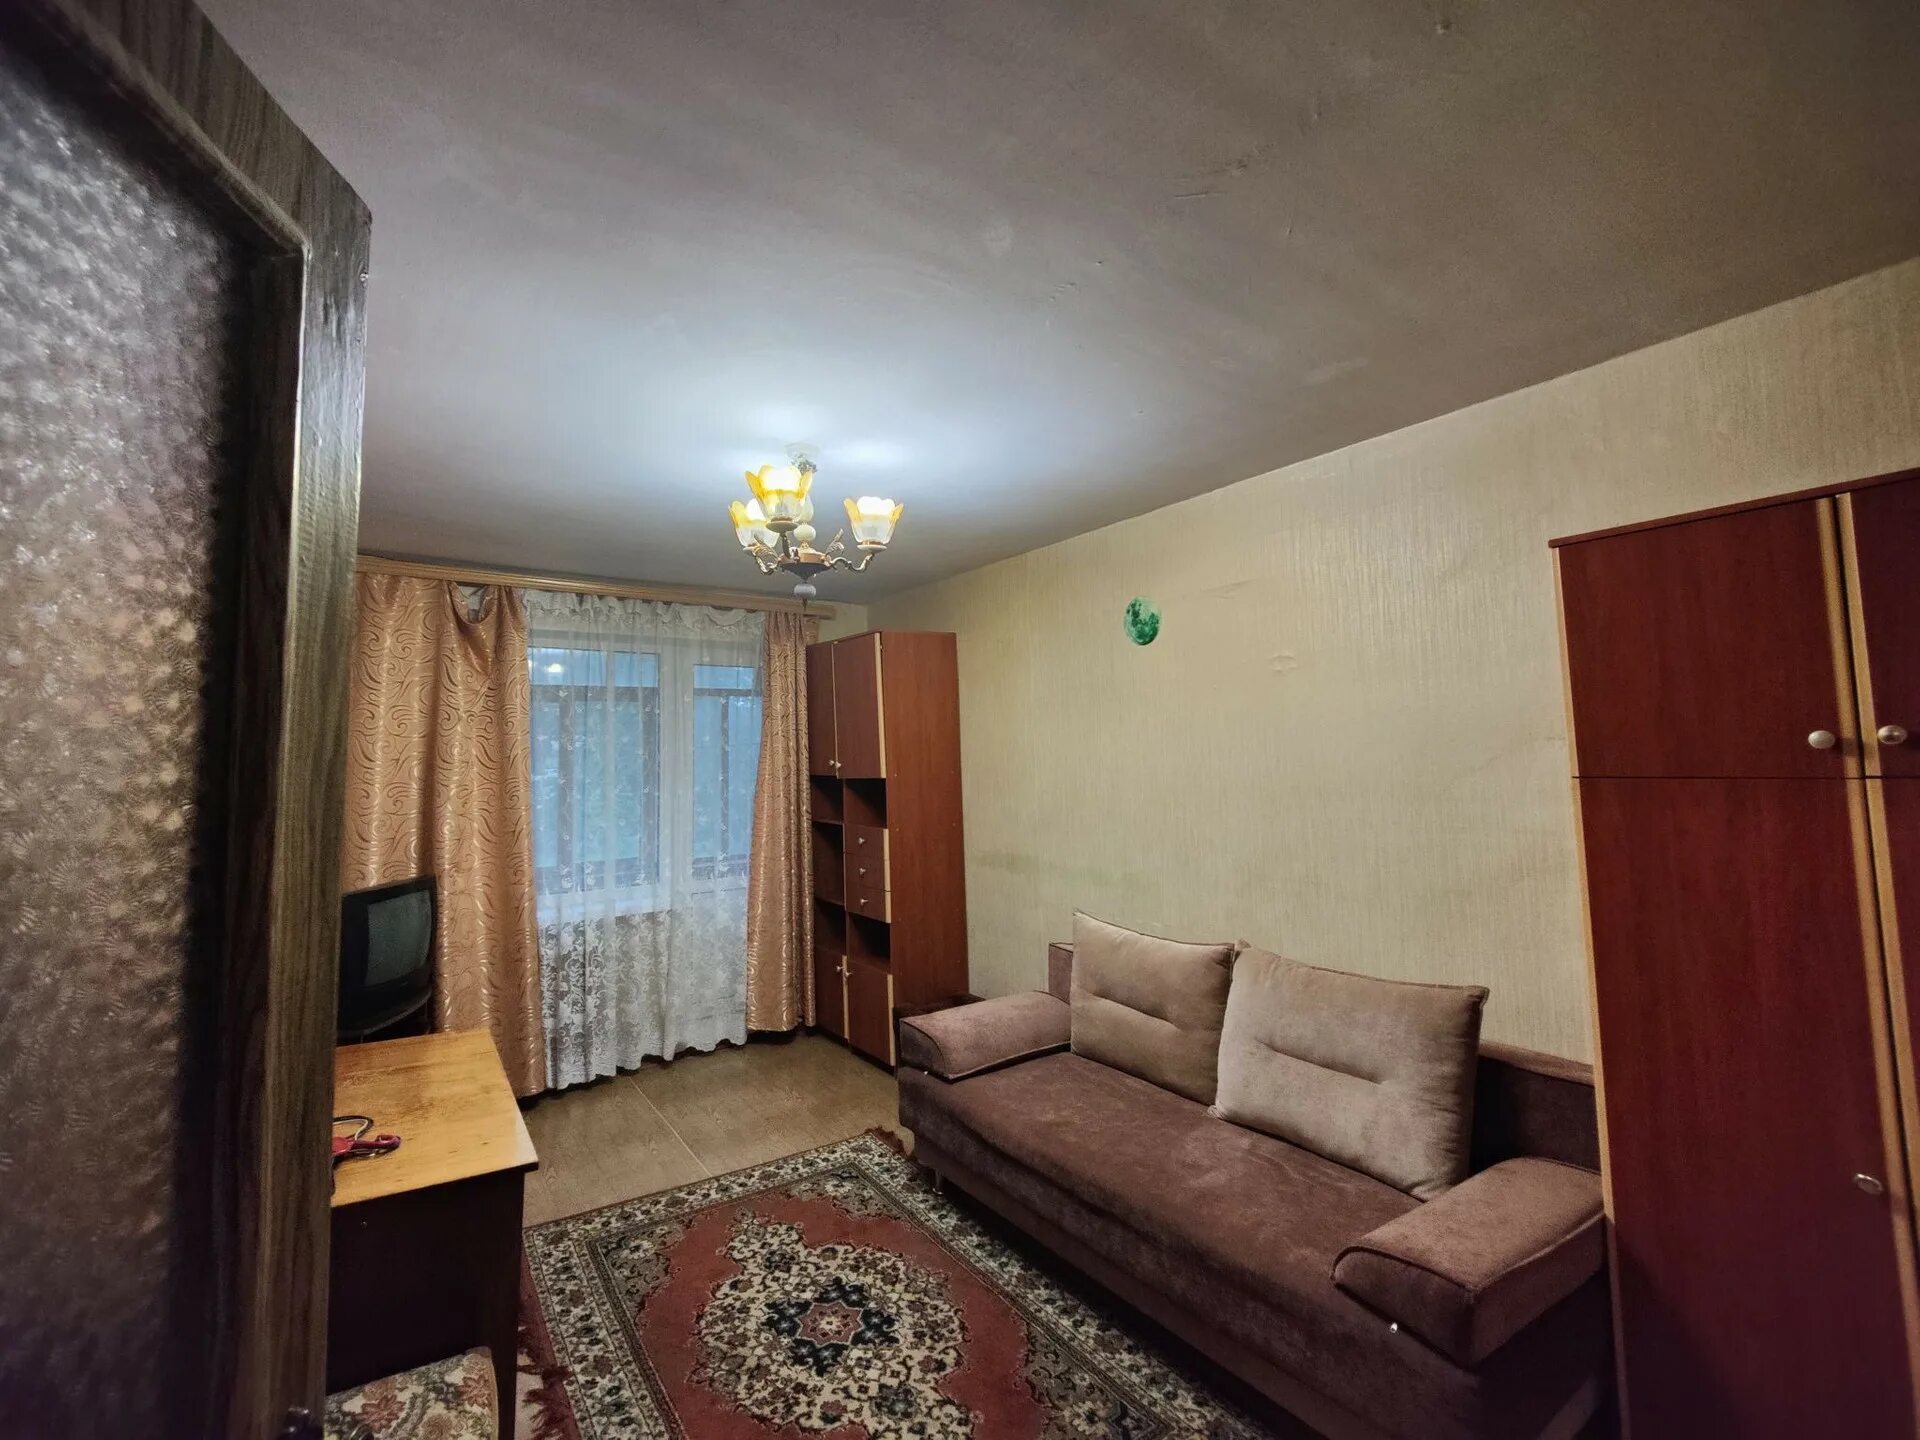 Купить 1 комнатную квартиру в Брянске вторичное жилье. Купить однокомнатную брянске вторичное